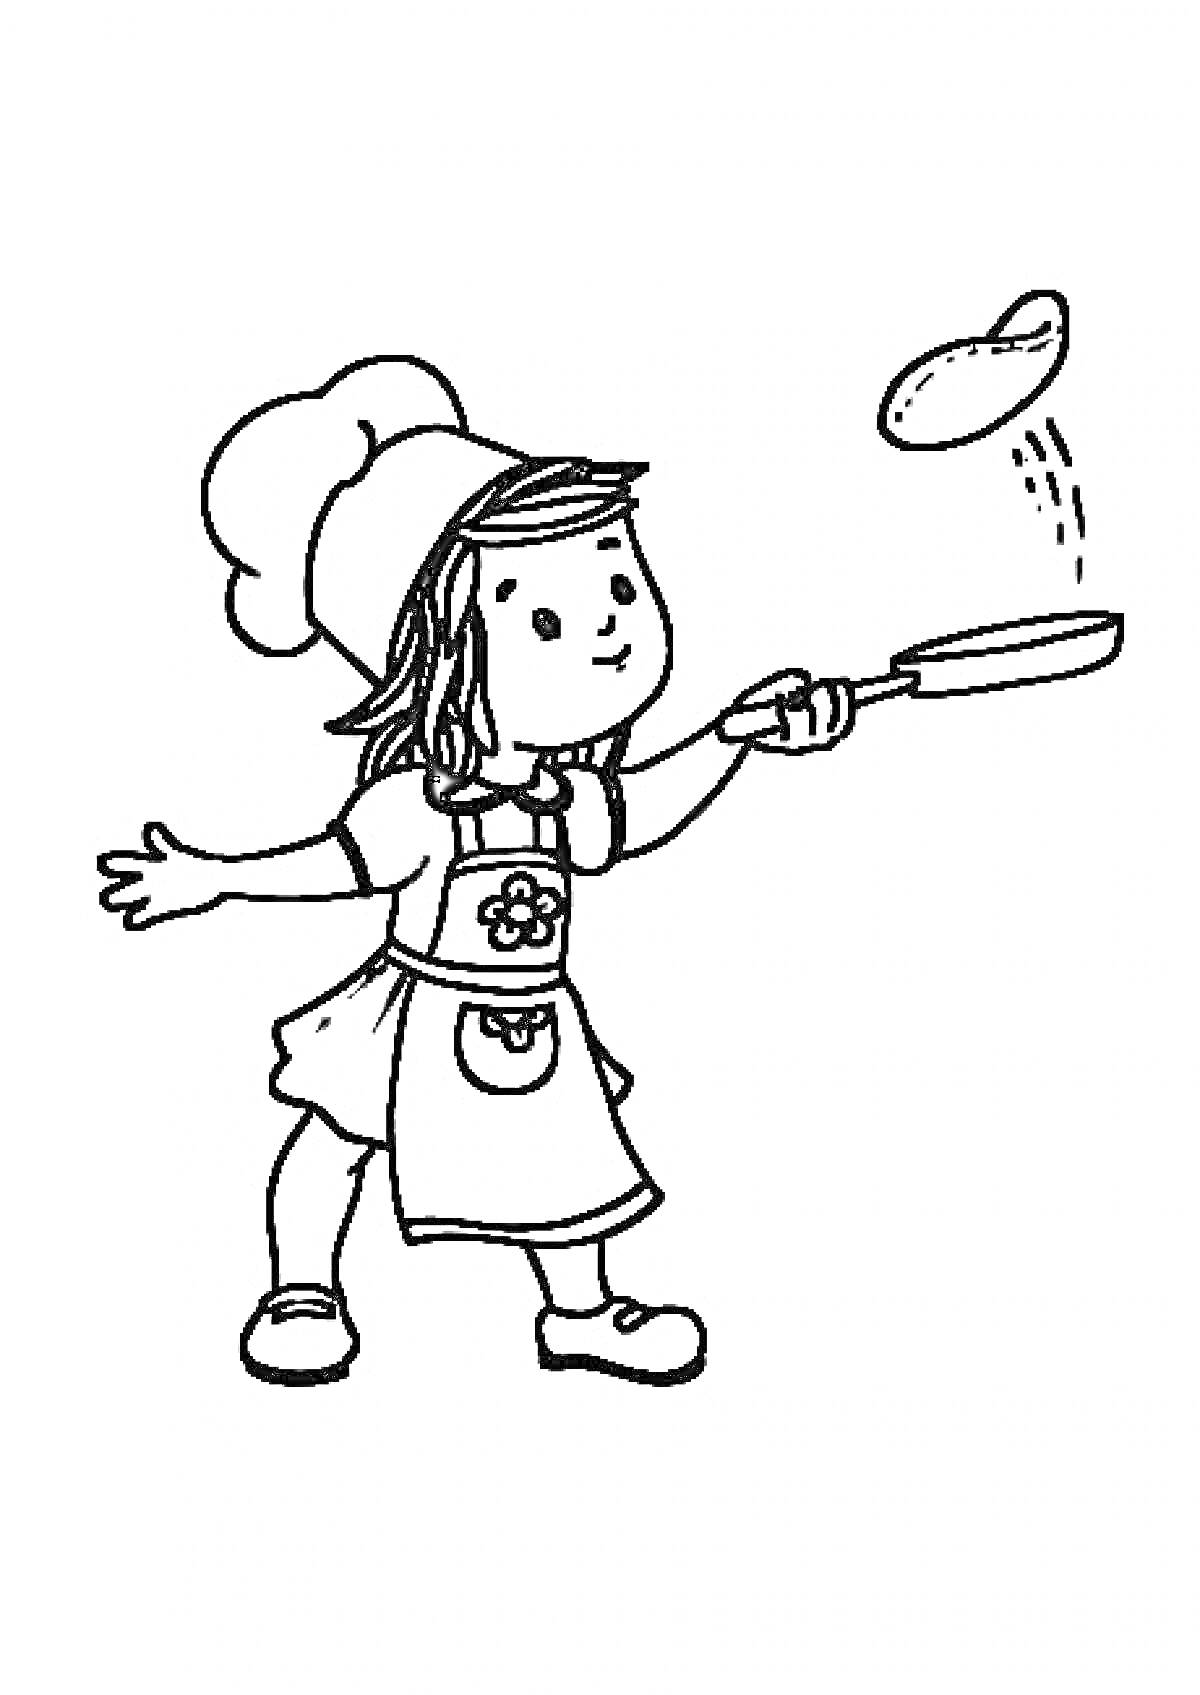 Девочка в колпаке шеф-повара, подбрасывающая блин в сковороде